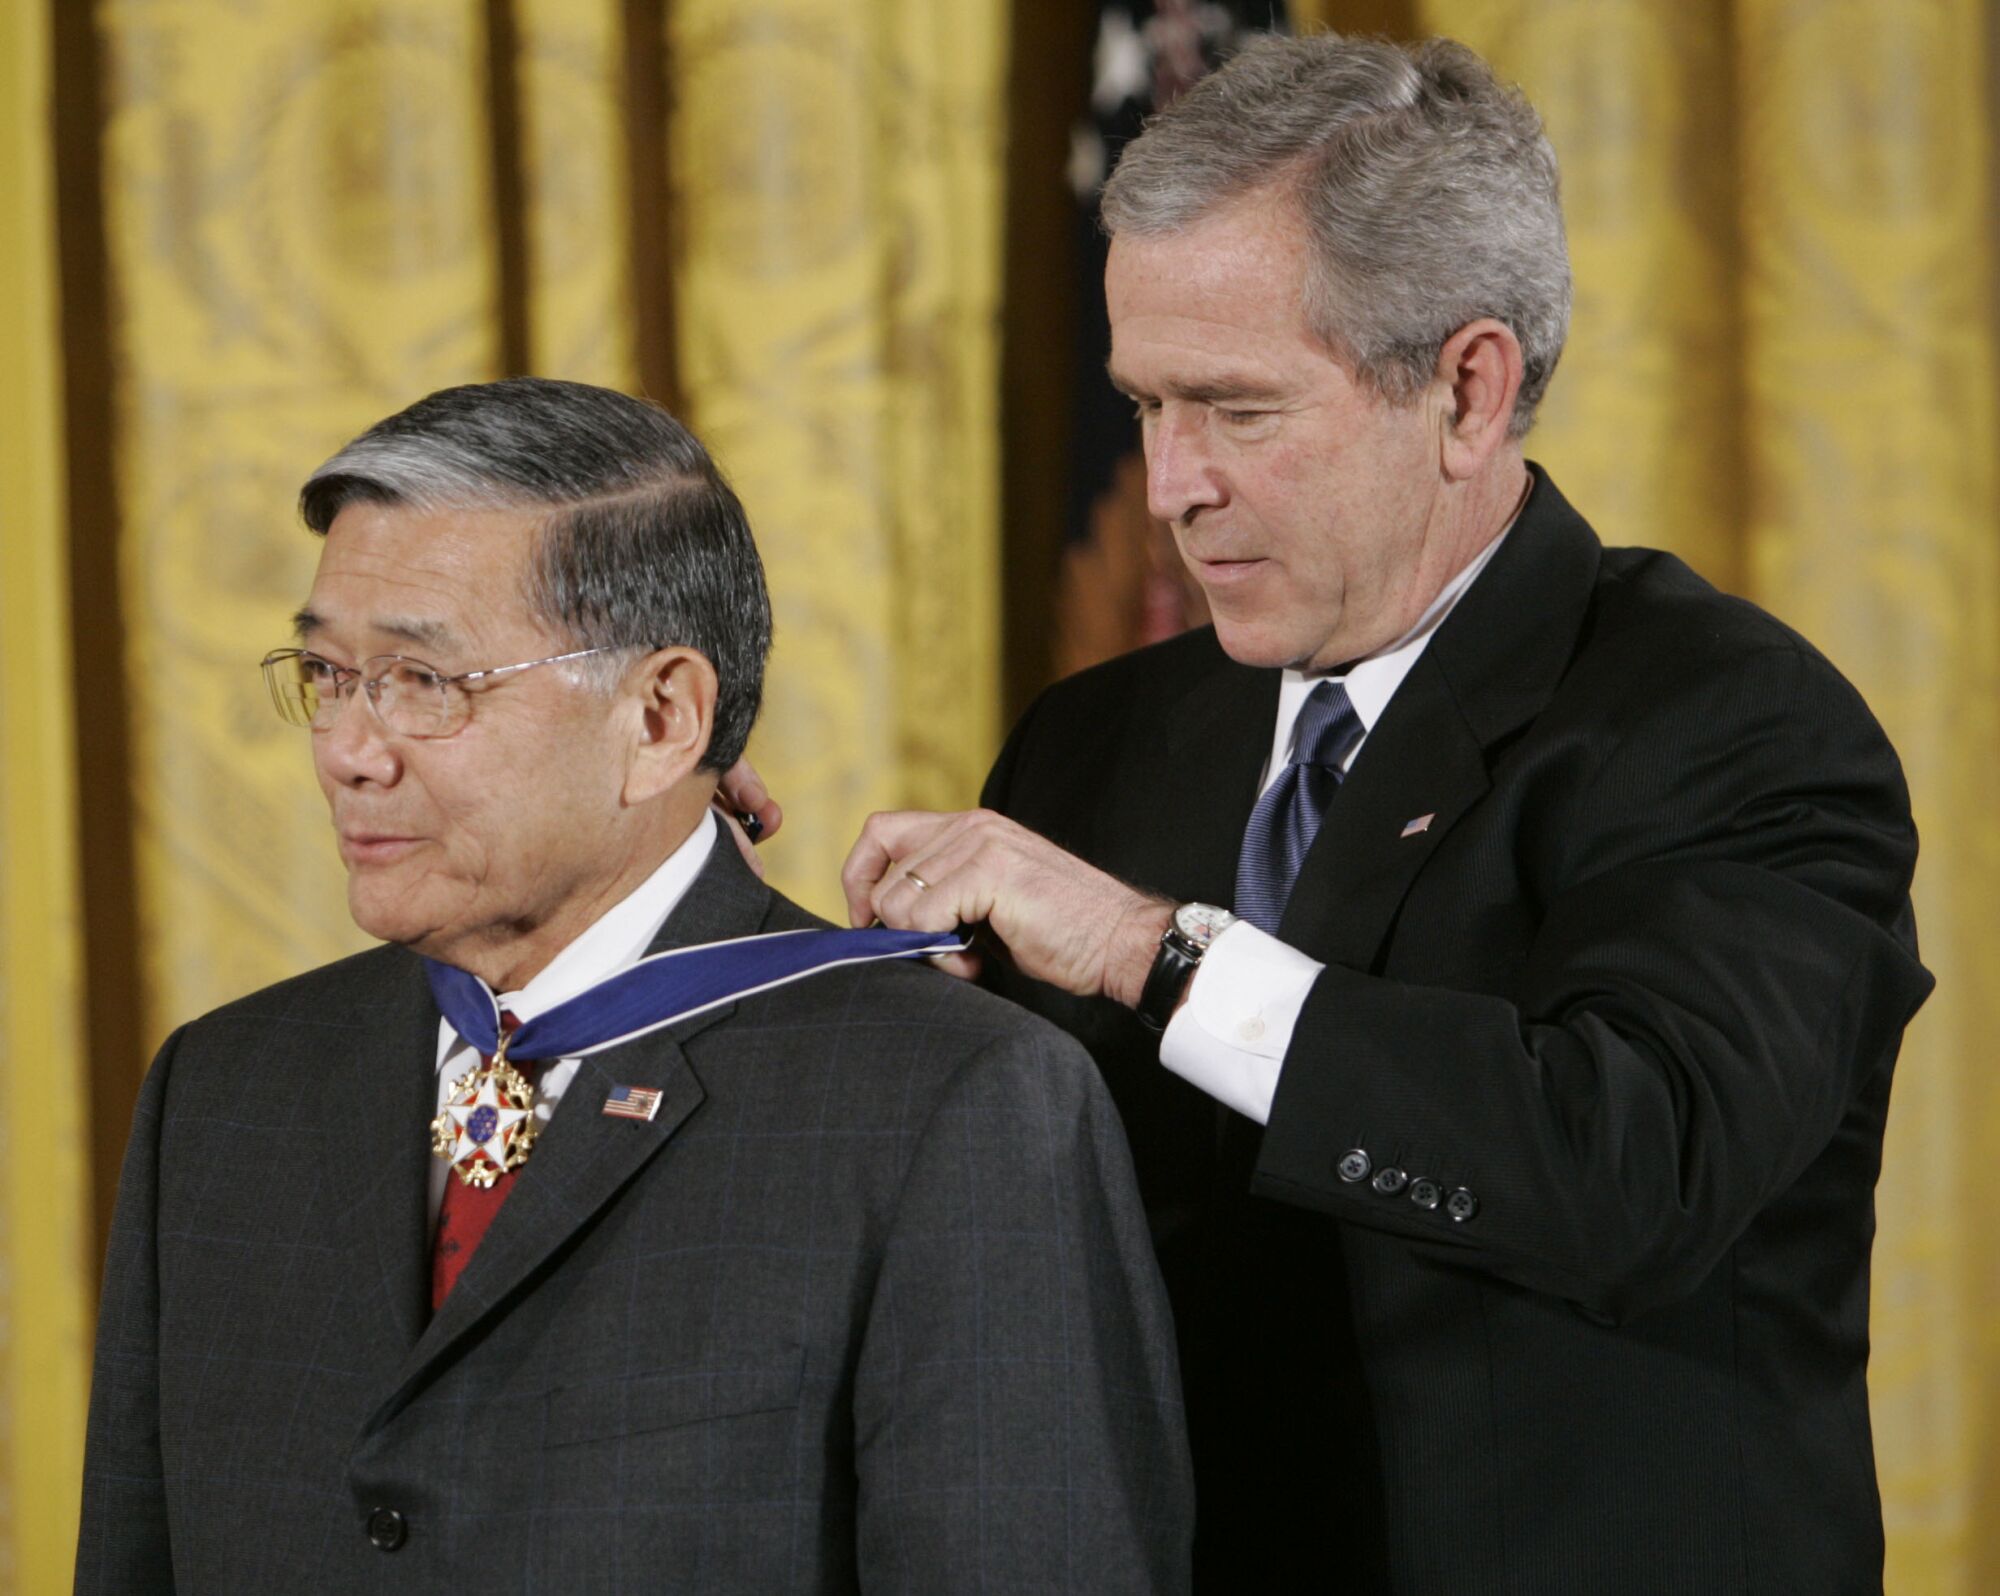 Der damalige Präsident George W. Bush (rechts) überreicht Norman Mineta die Freiheitsmedaille des Präsidenten.